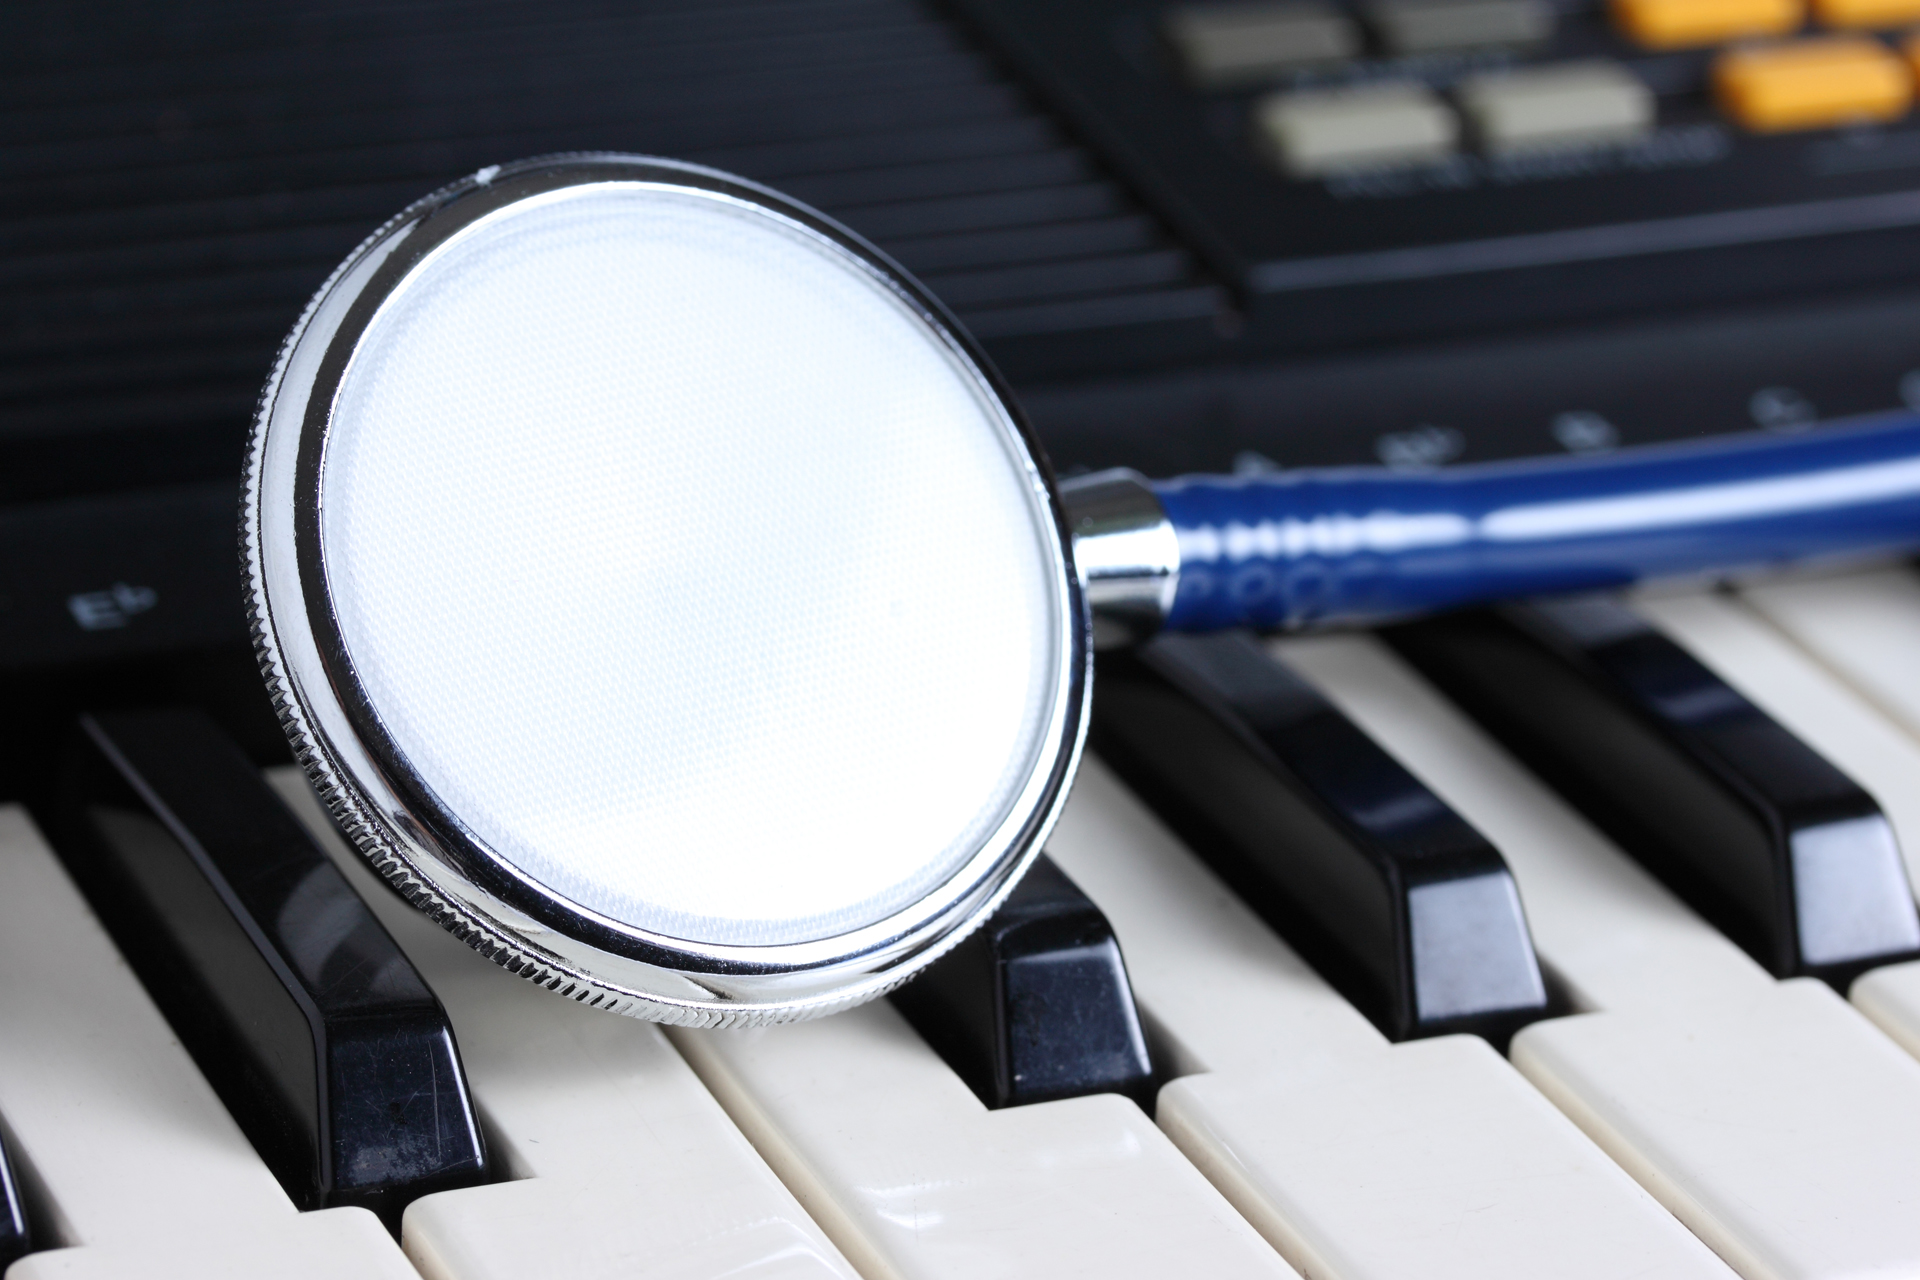 Los musicoterapeutas utilizan intervenciones activas y receptivas, y crean objetivos para mejorar la salud y el bienestar (Getty Images)